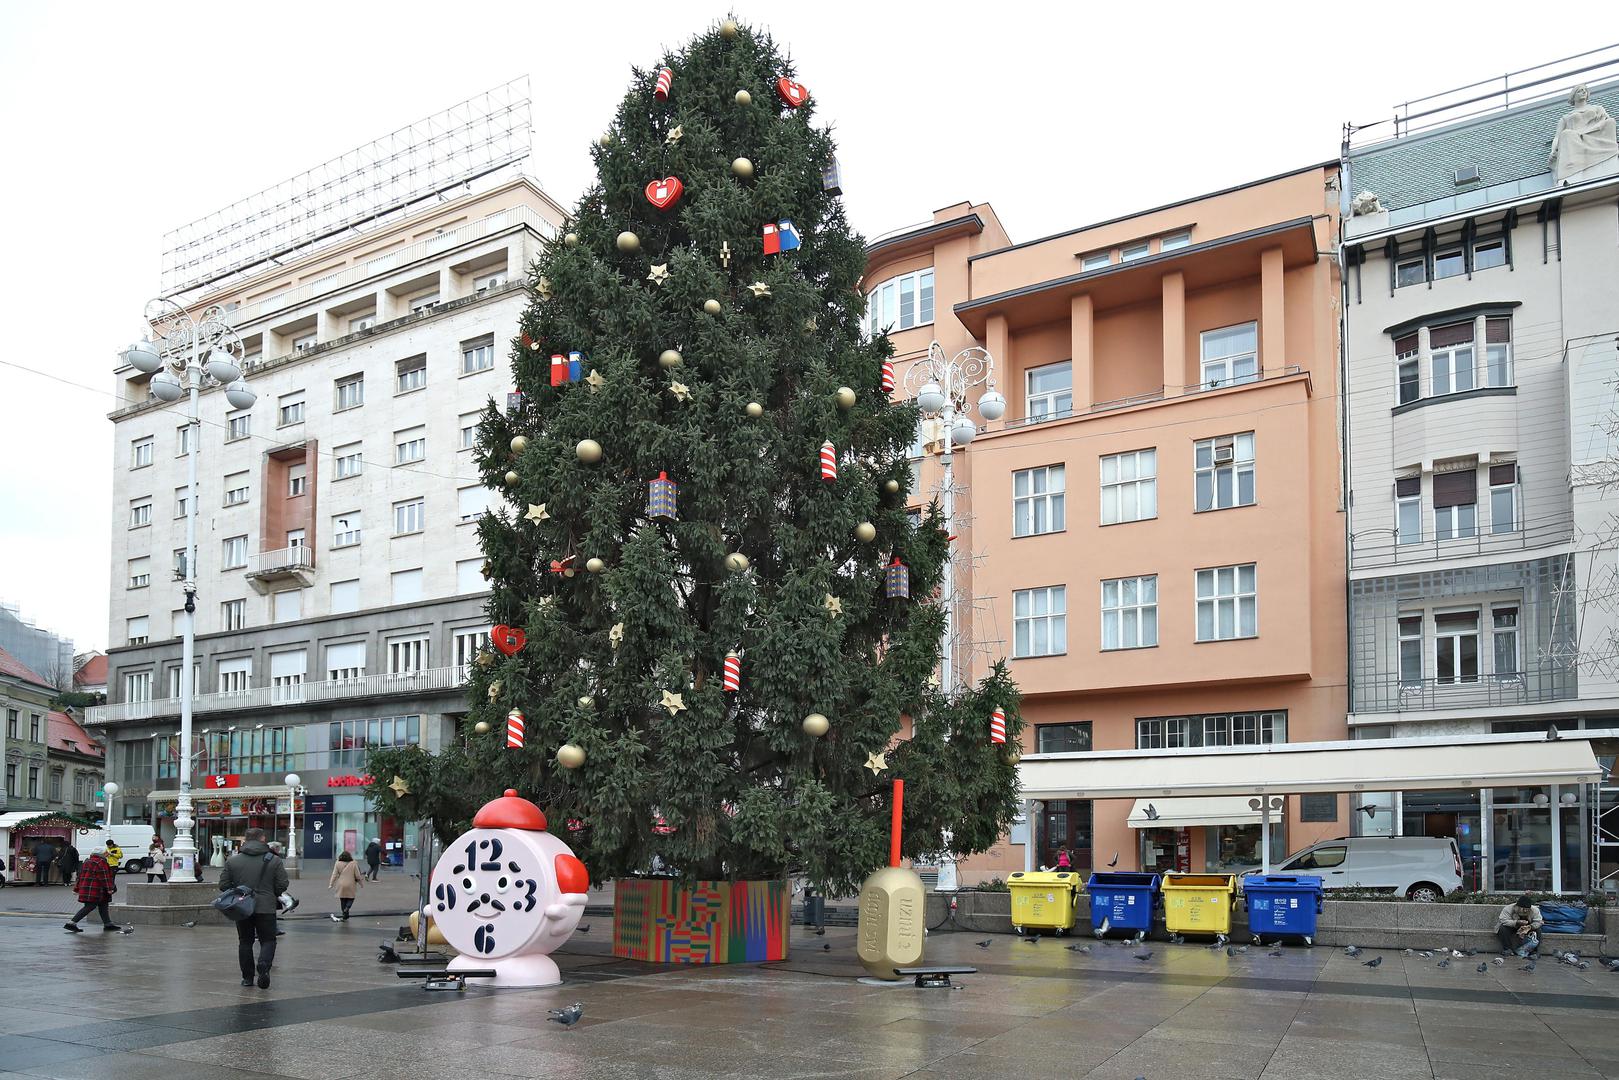 29.11.2021., Zagreb - Trg bana Josipa Jelacica. Kontejneri kao pokloni ispod bora? Mnogi se gradjani pitaju da li je ovo pravo mjesto za mnostvo kontejnera. Naime oni stoje tik do prekrasno okicenog bora na glavnom gradskom trgu.